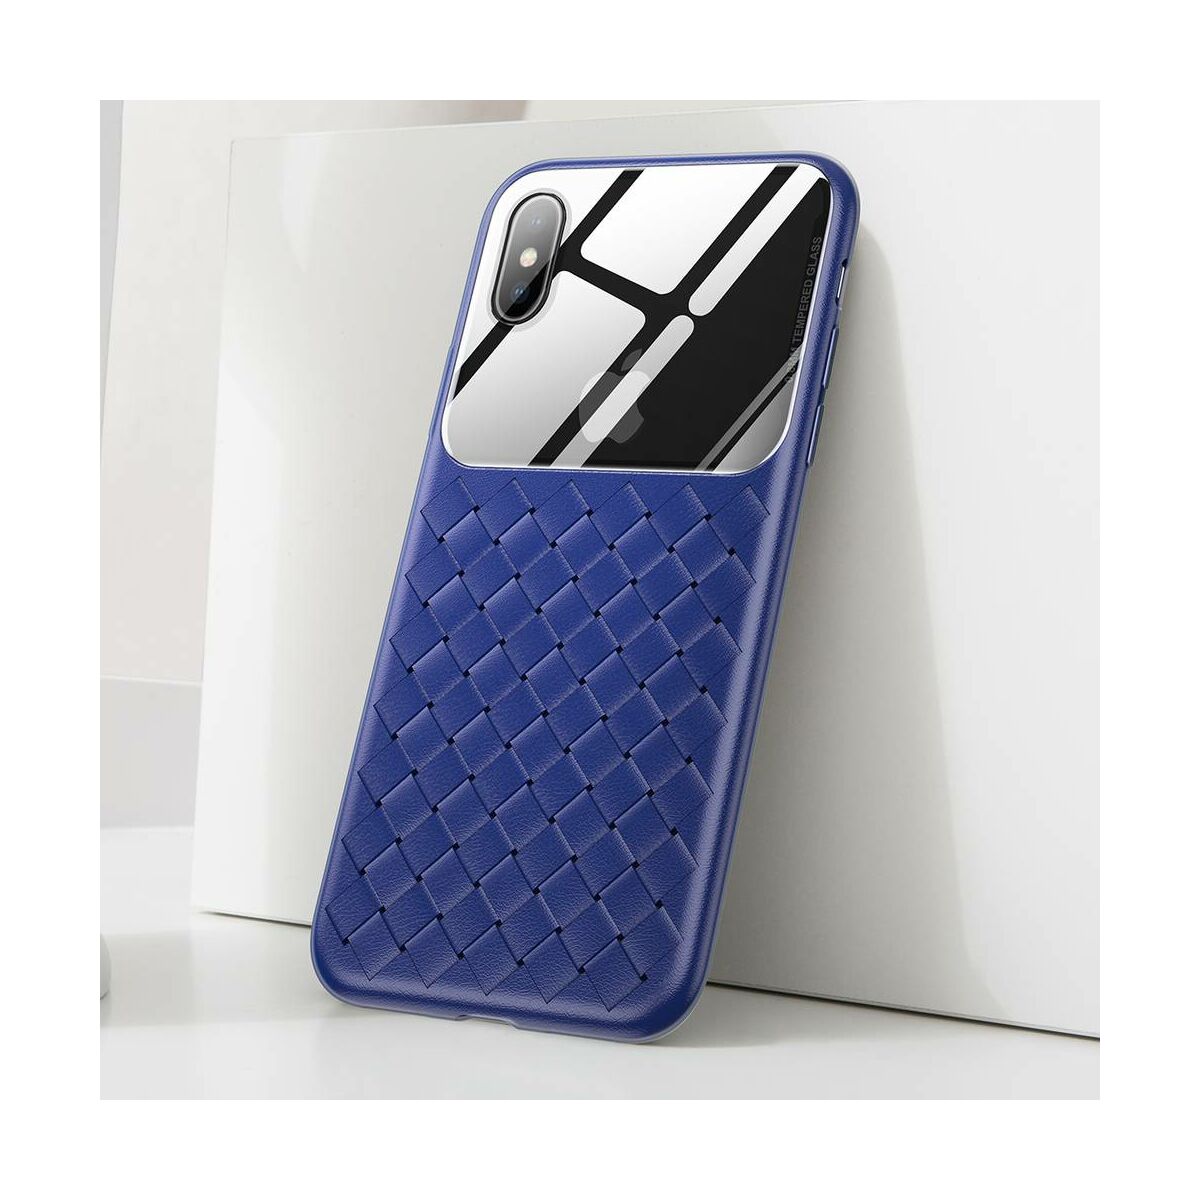 Kép 5/10 - Baseus iPhone XS Max üveg & tok, BV Weaving, kék (WIAPIPH65-BL03)